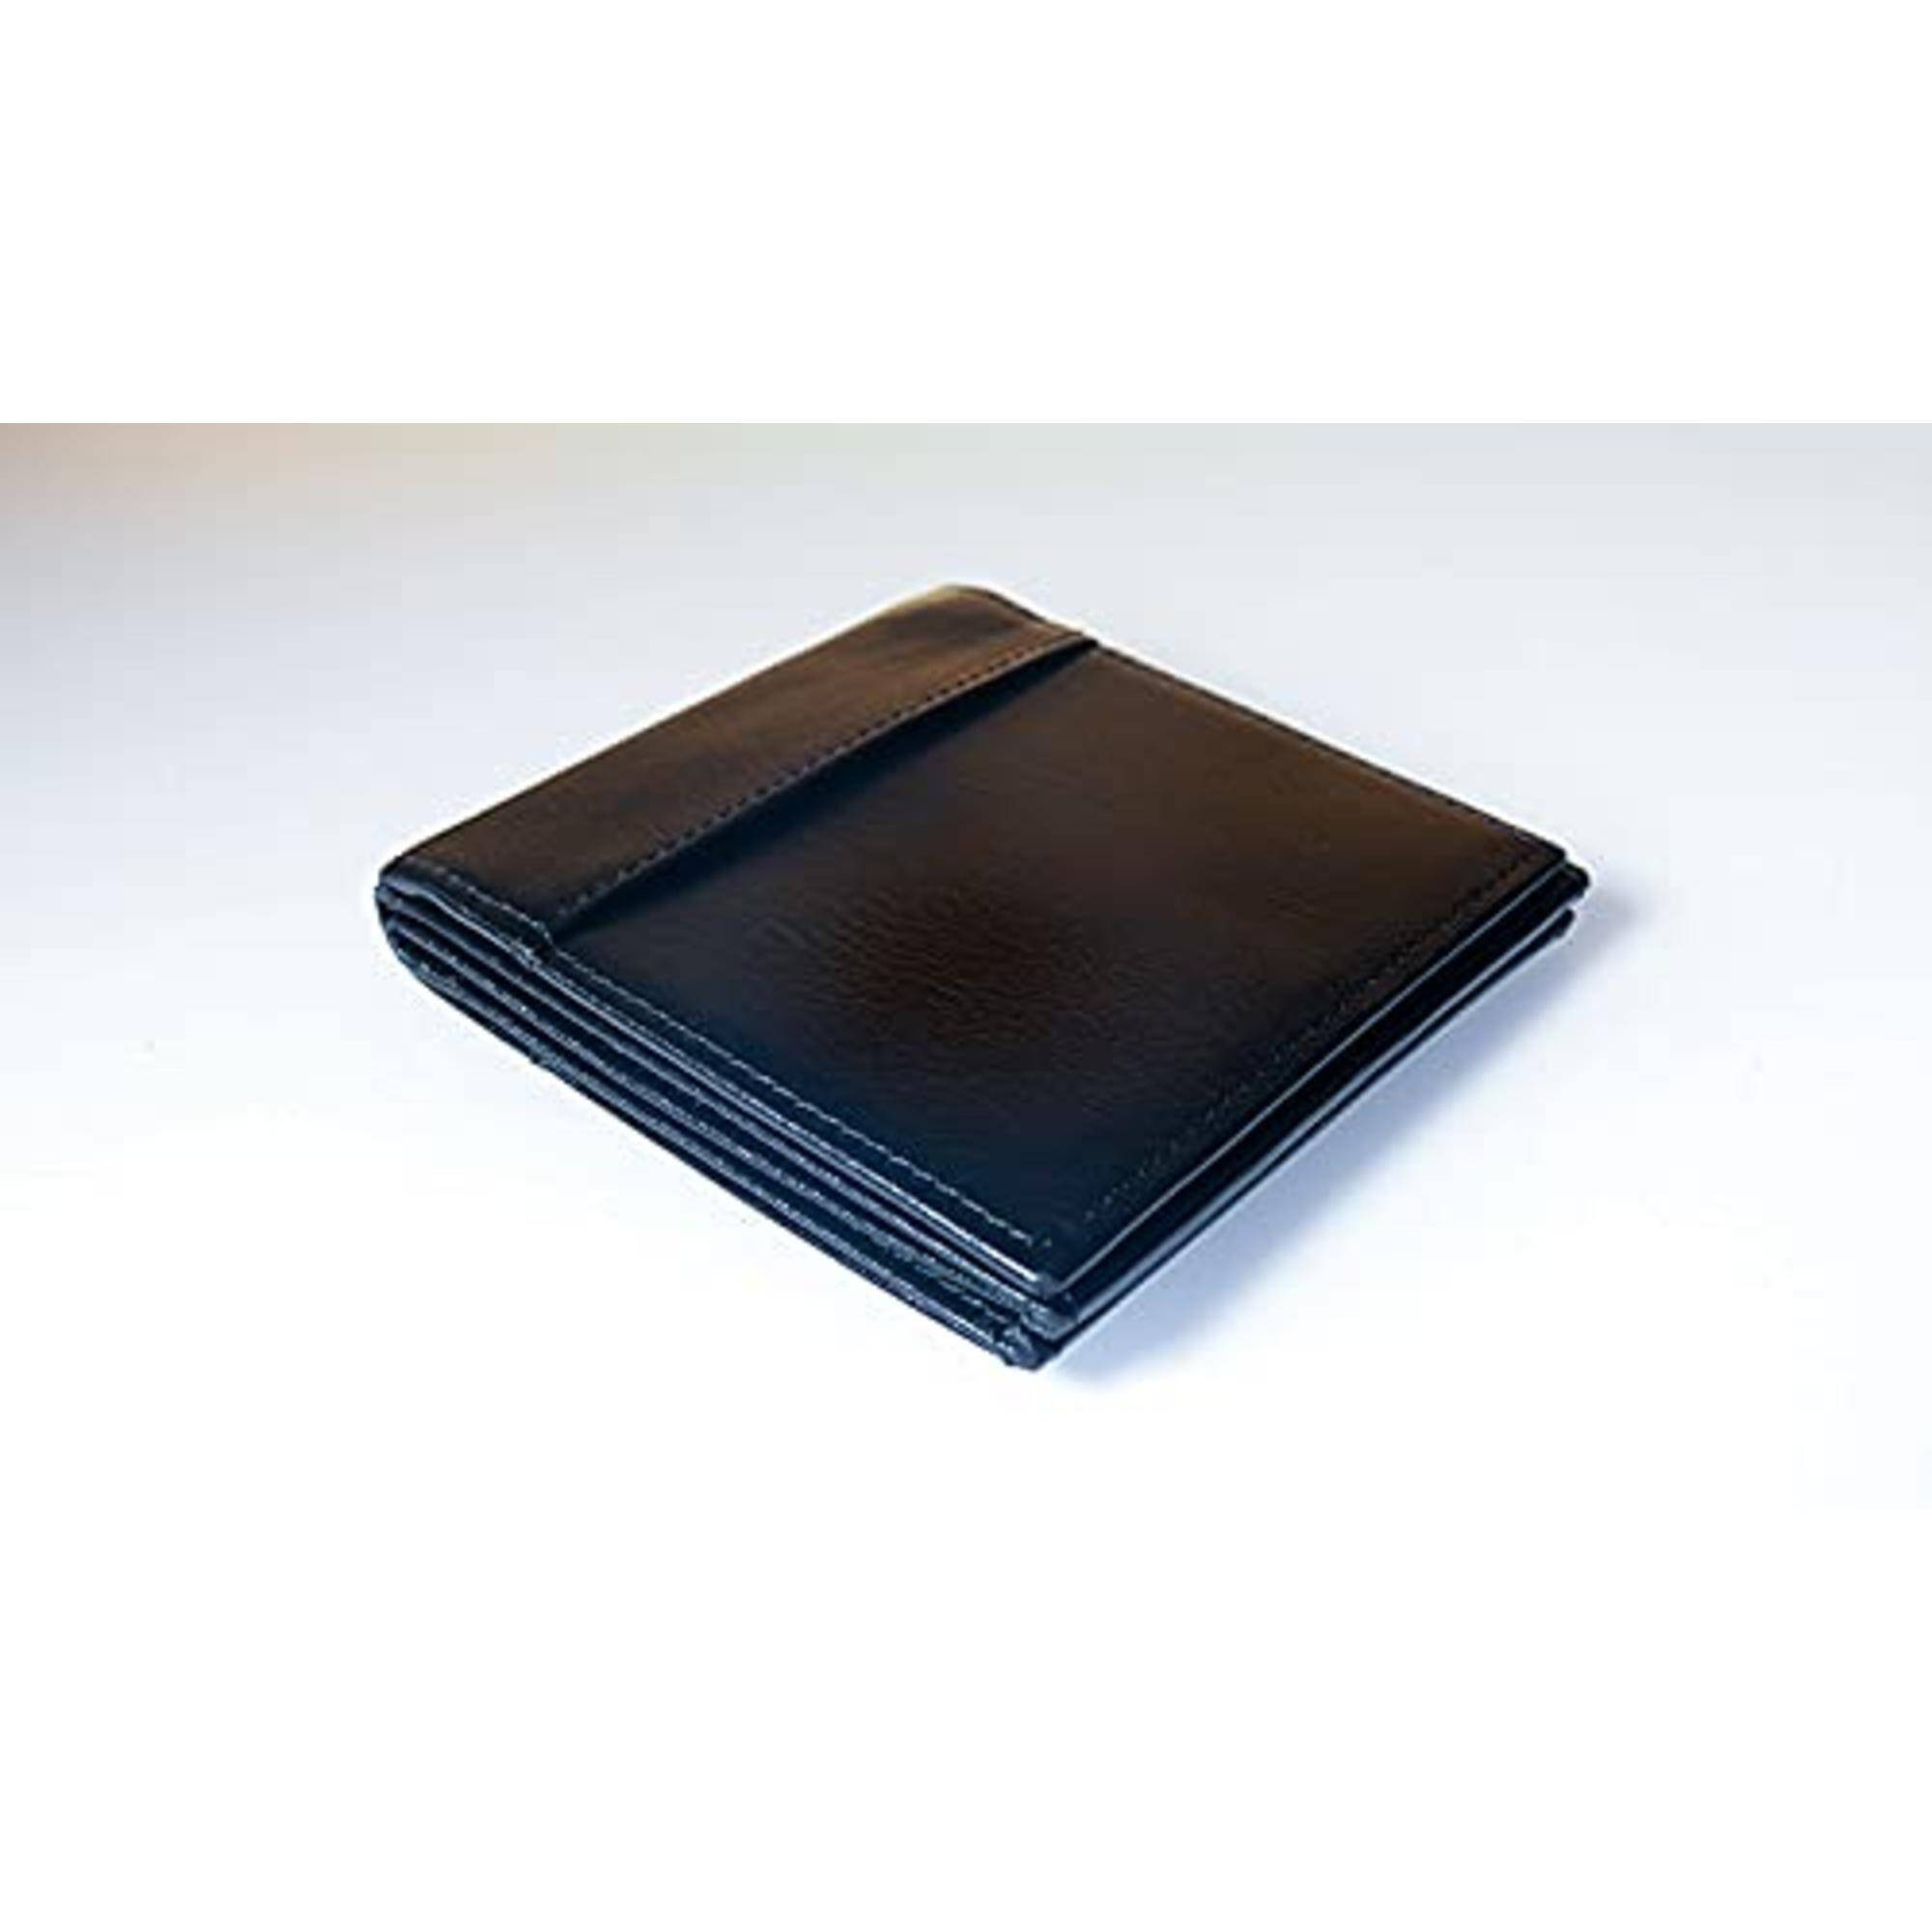 Espionage wallet by Alakazam on white surface